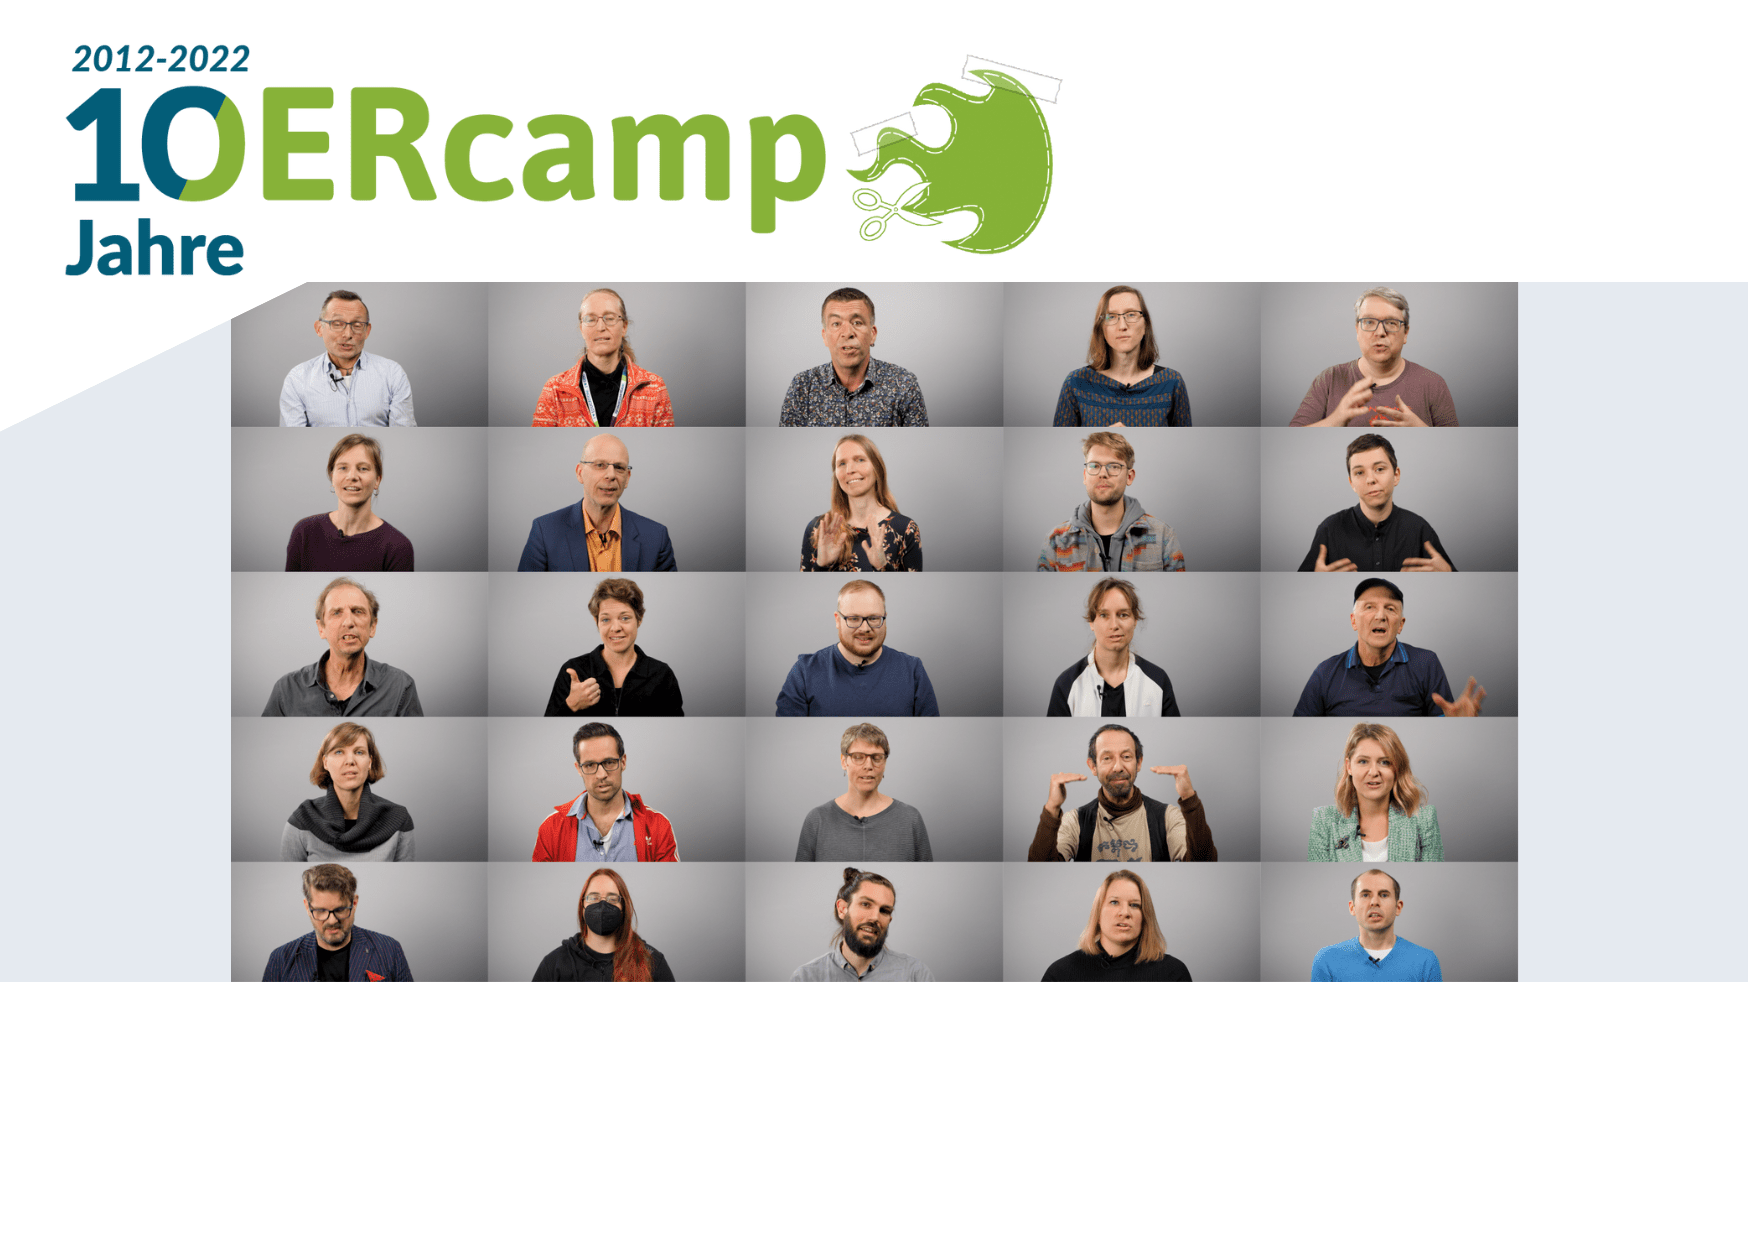 Thumpnail der Aufzeichnung vom OERcamp2022: Impressionen aus den Sessions (Porträts der Sessiongebenden als Mosaik)